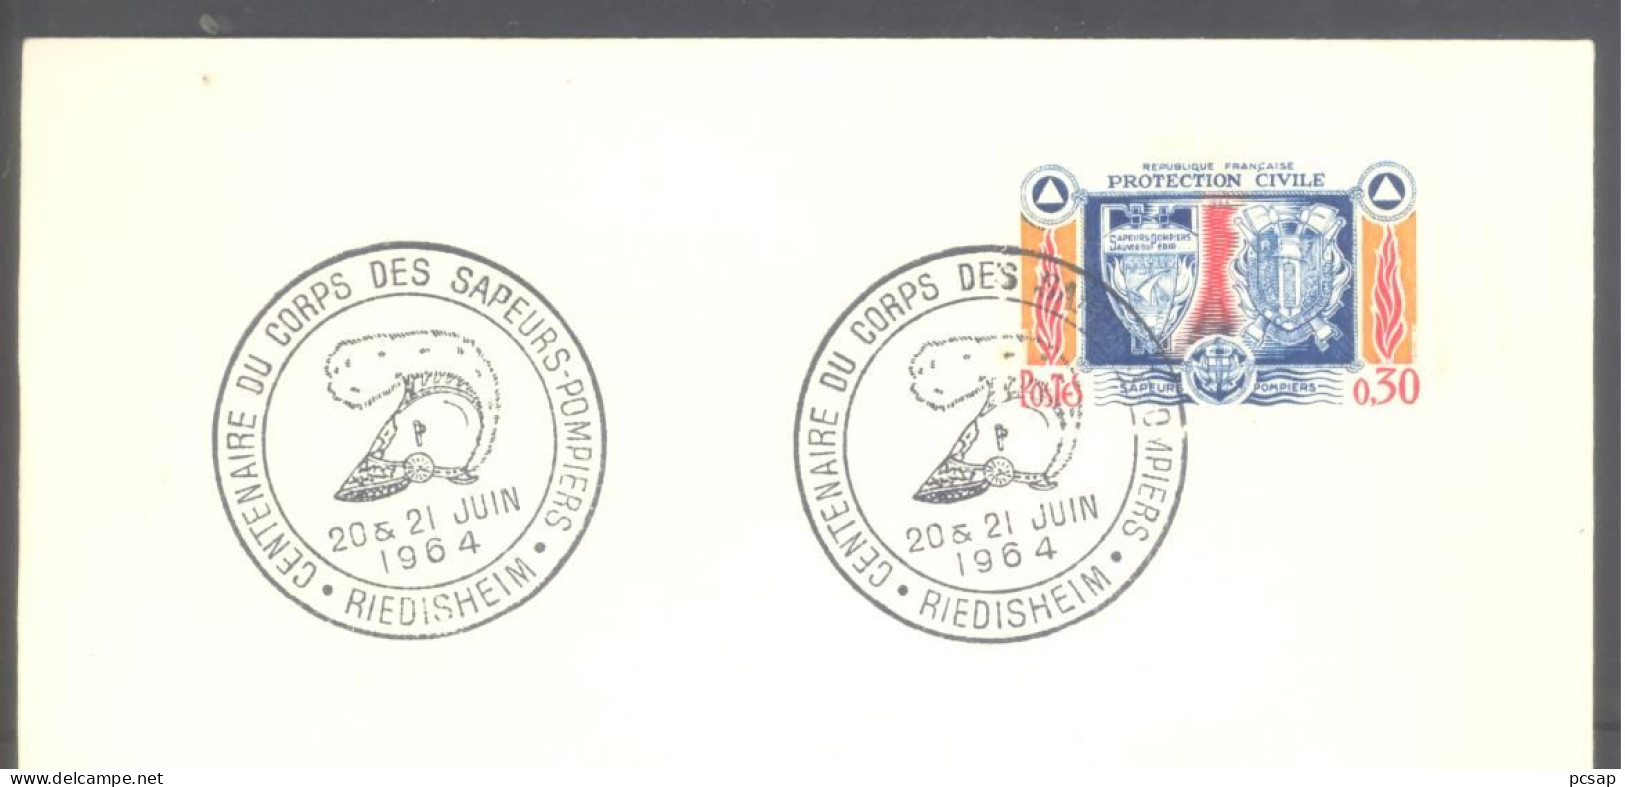 RIEDISHEIM (Centenaire Du Corps Des Sapeurs-pompiers) (sur Enveloppe Entière) - Commemorative Postmarks